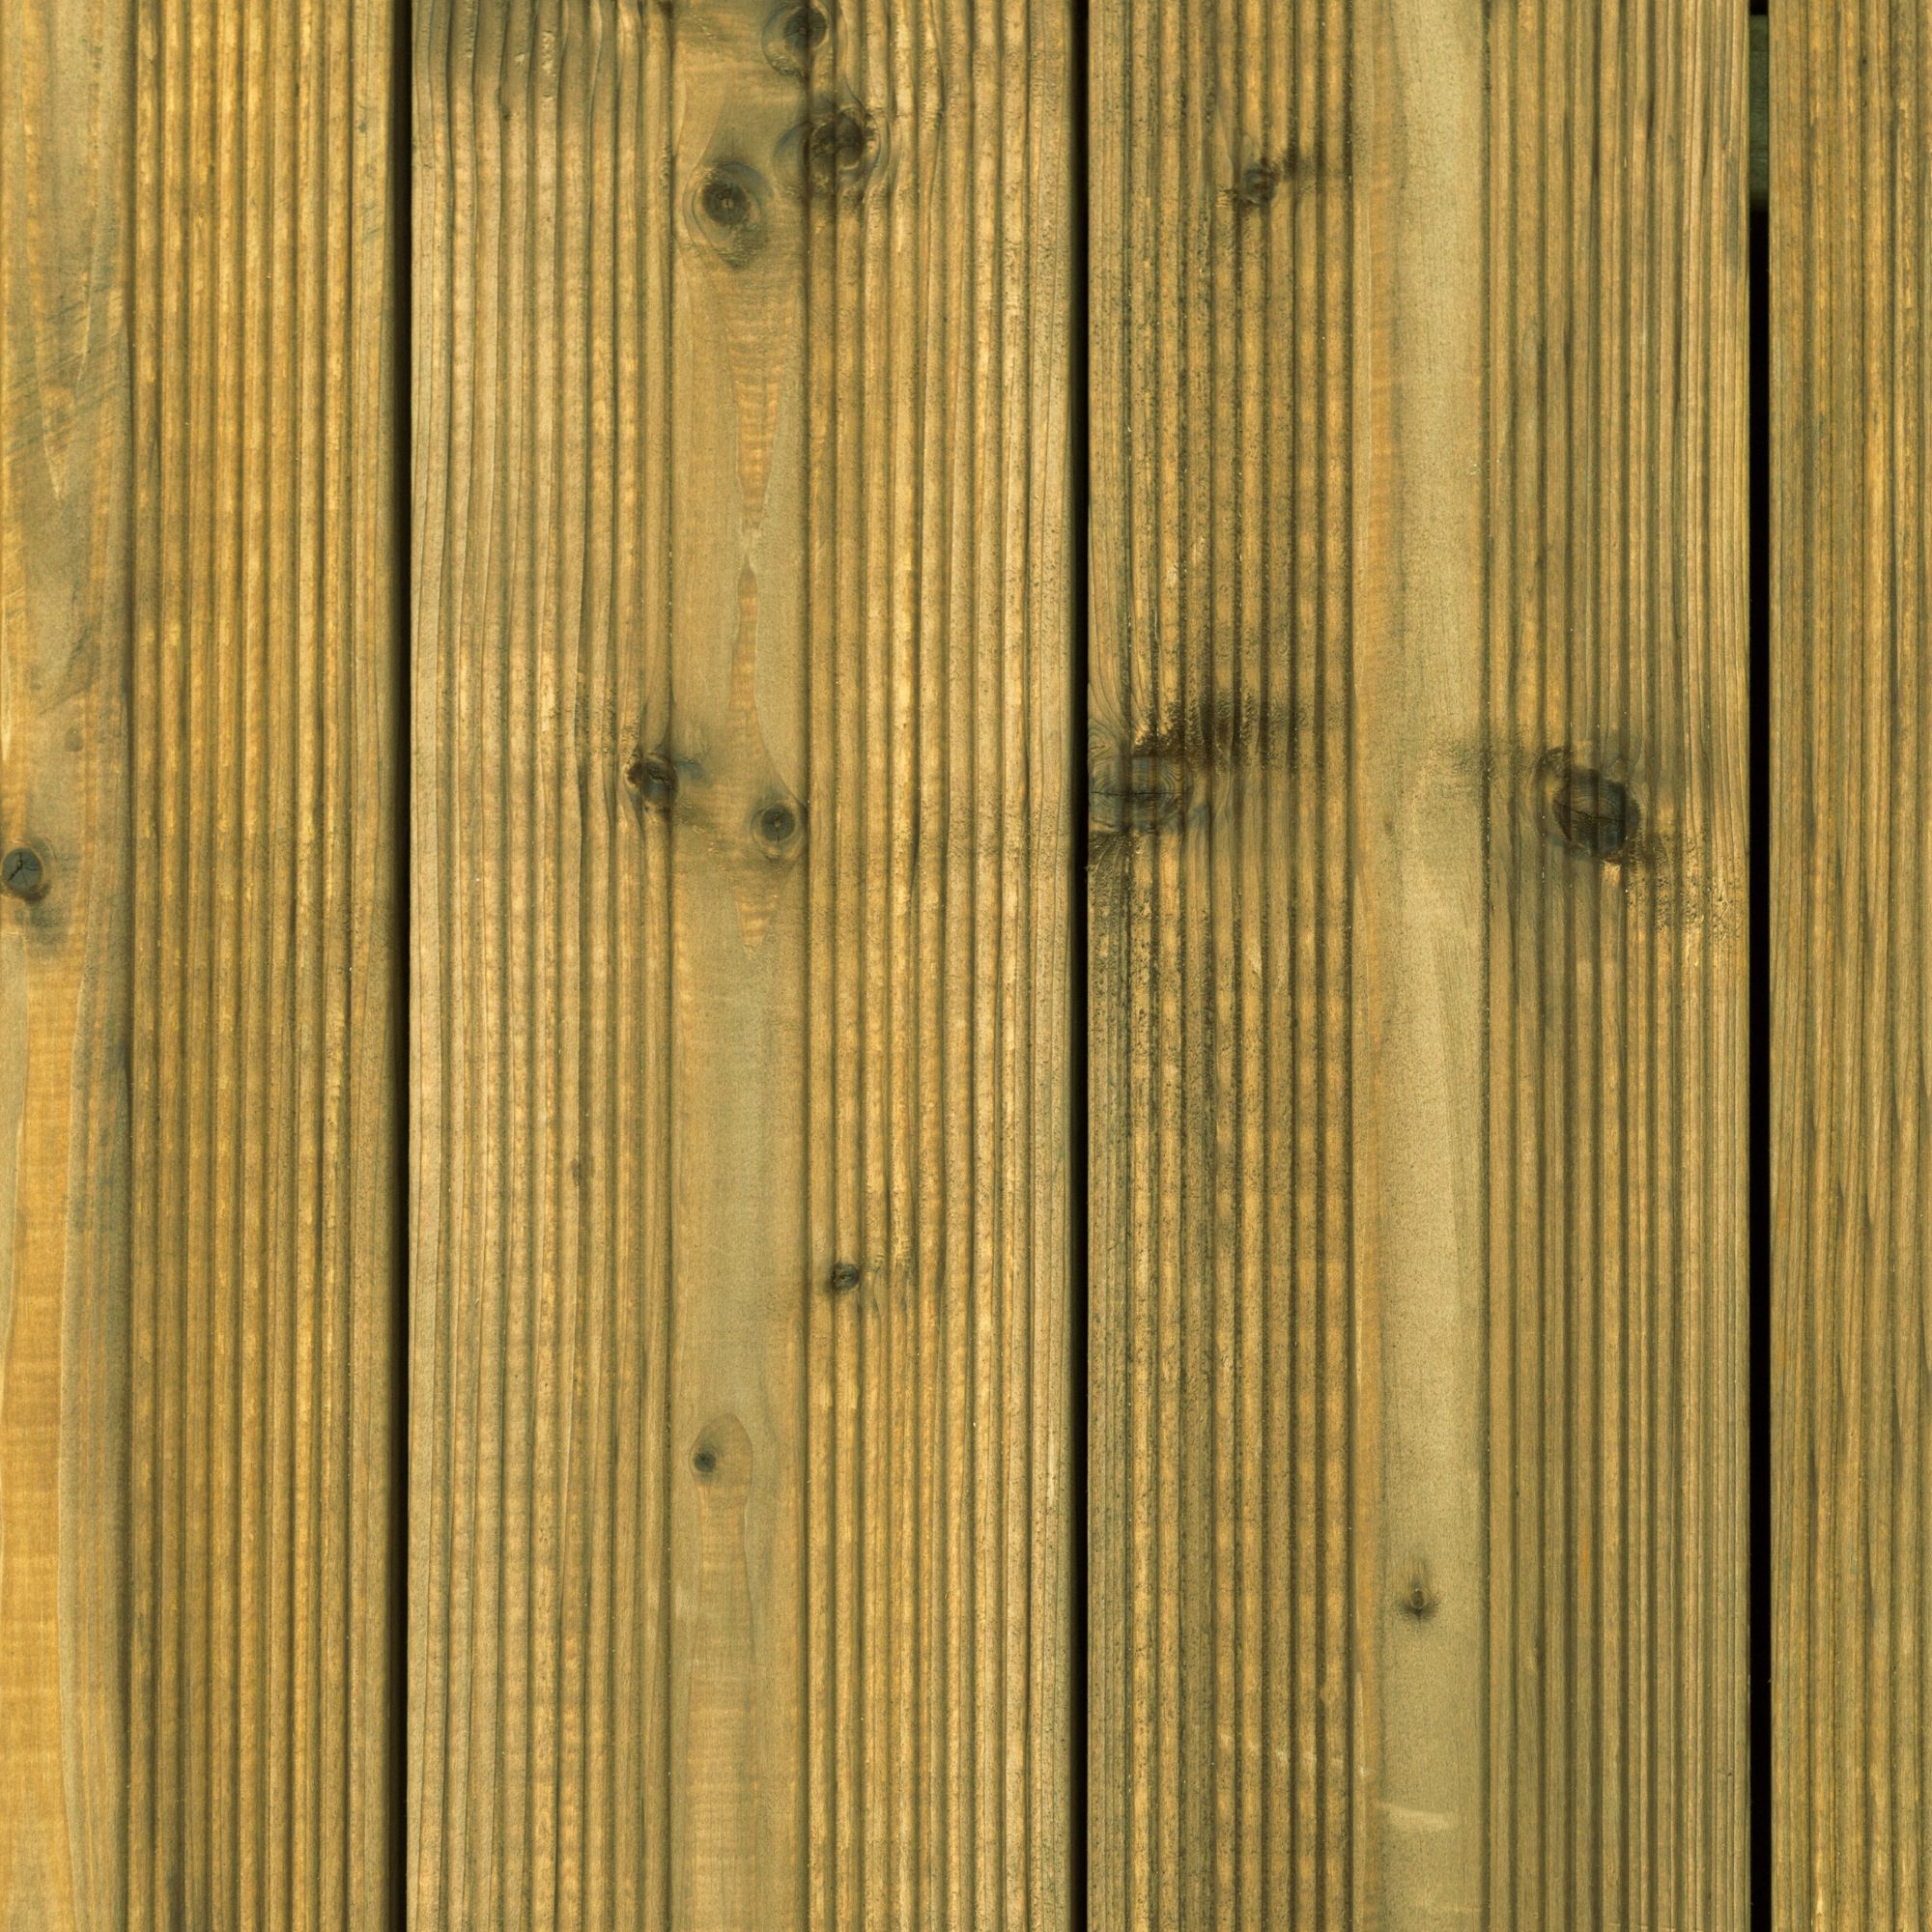 Metsä Wood Spruce Deck board (L)1.8m (W)120mm (T)24mm of 5